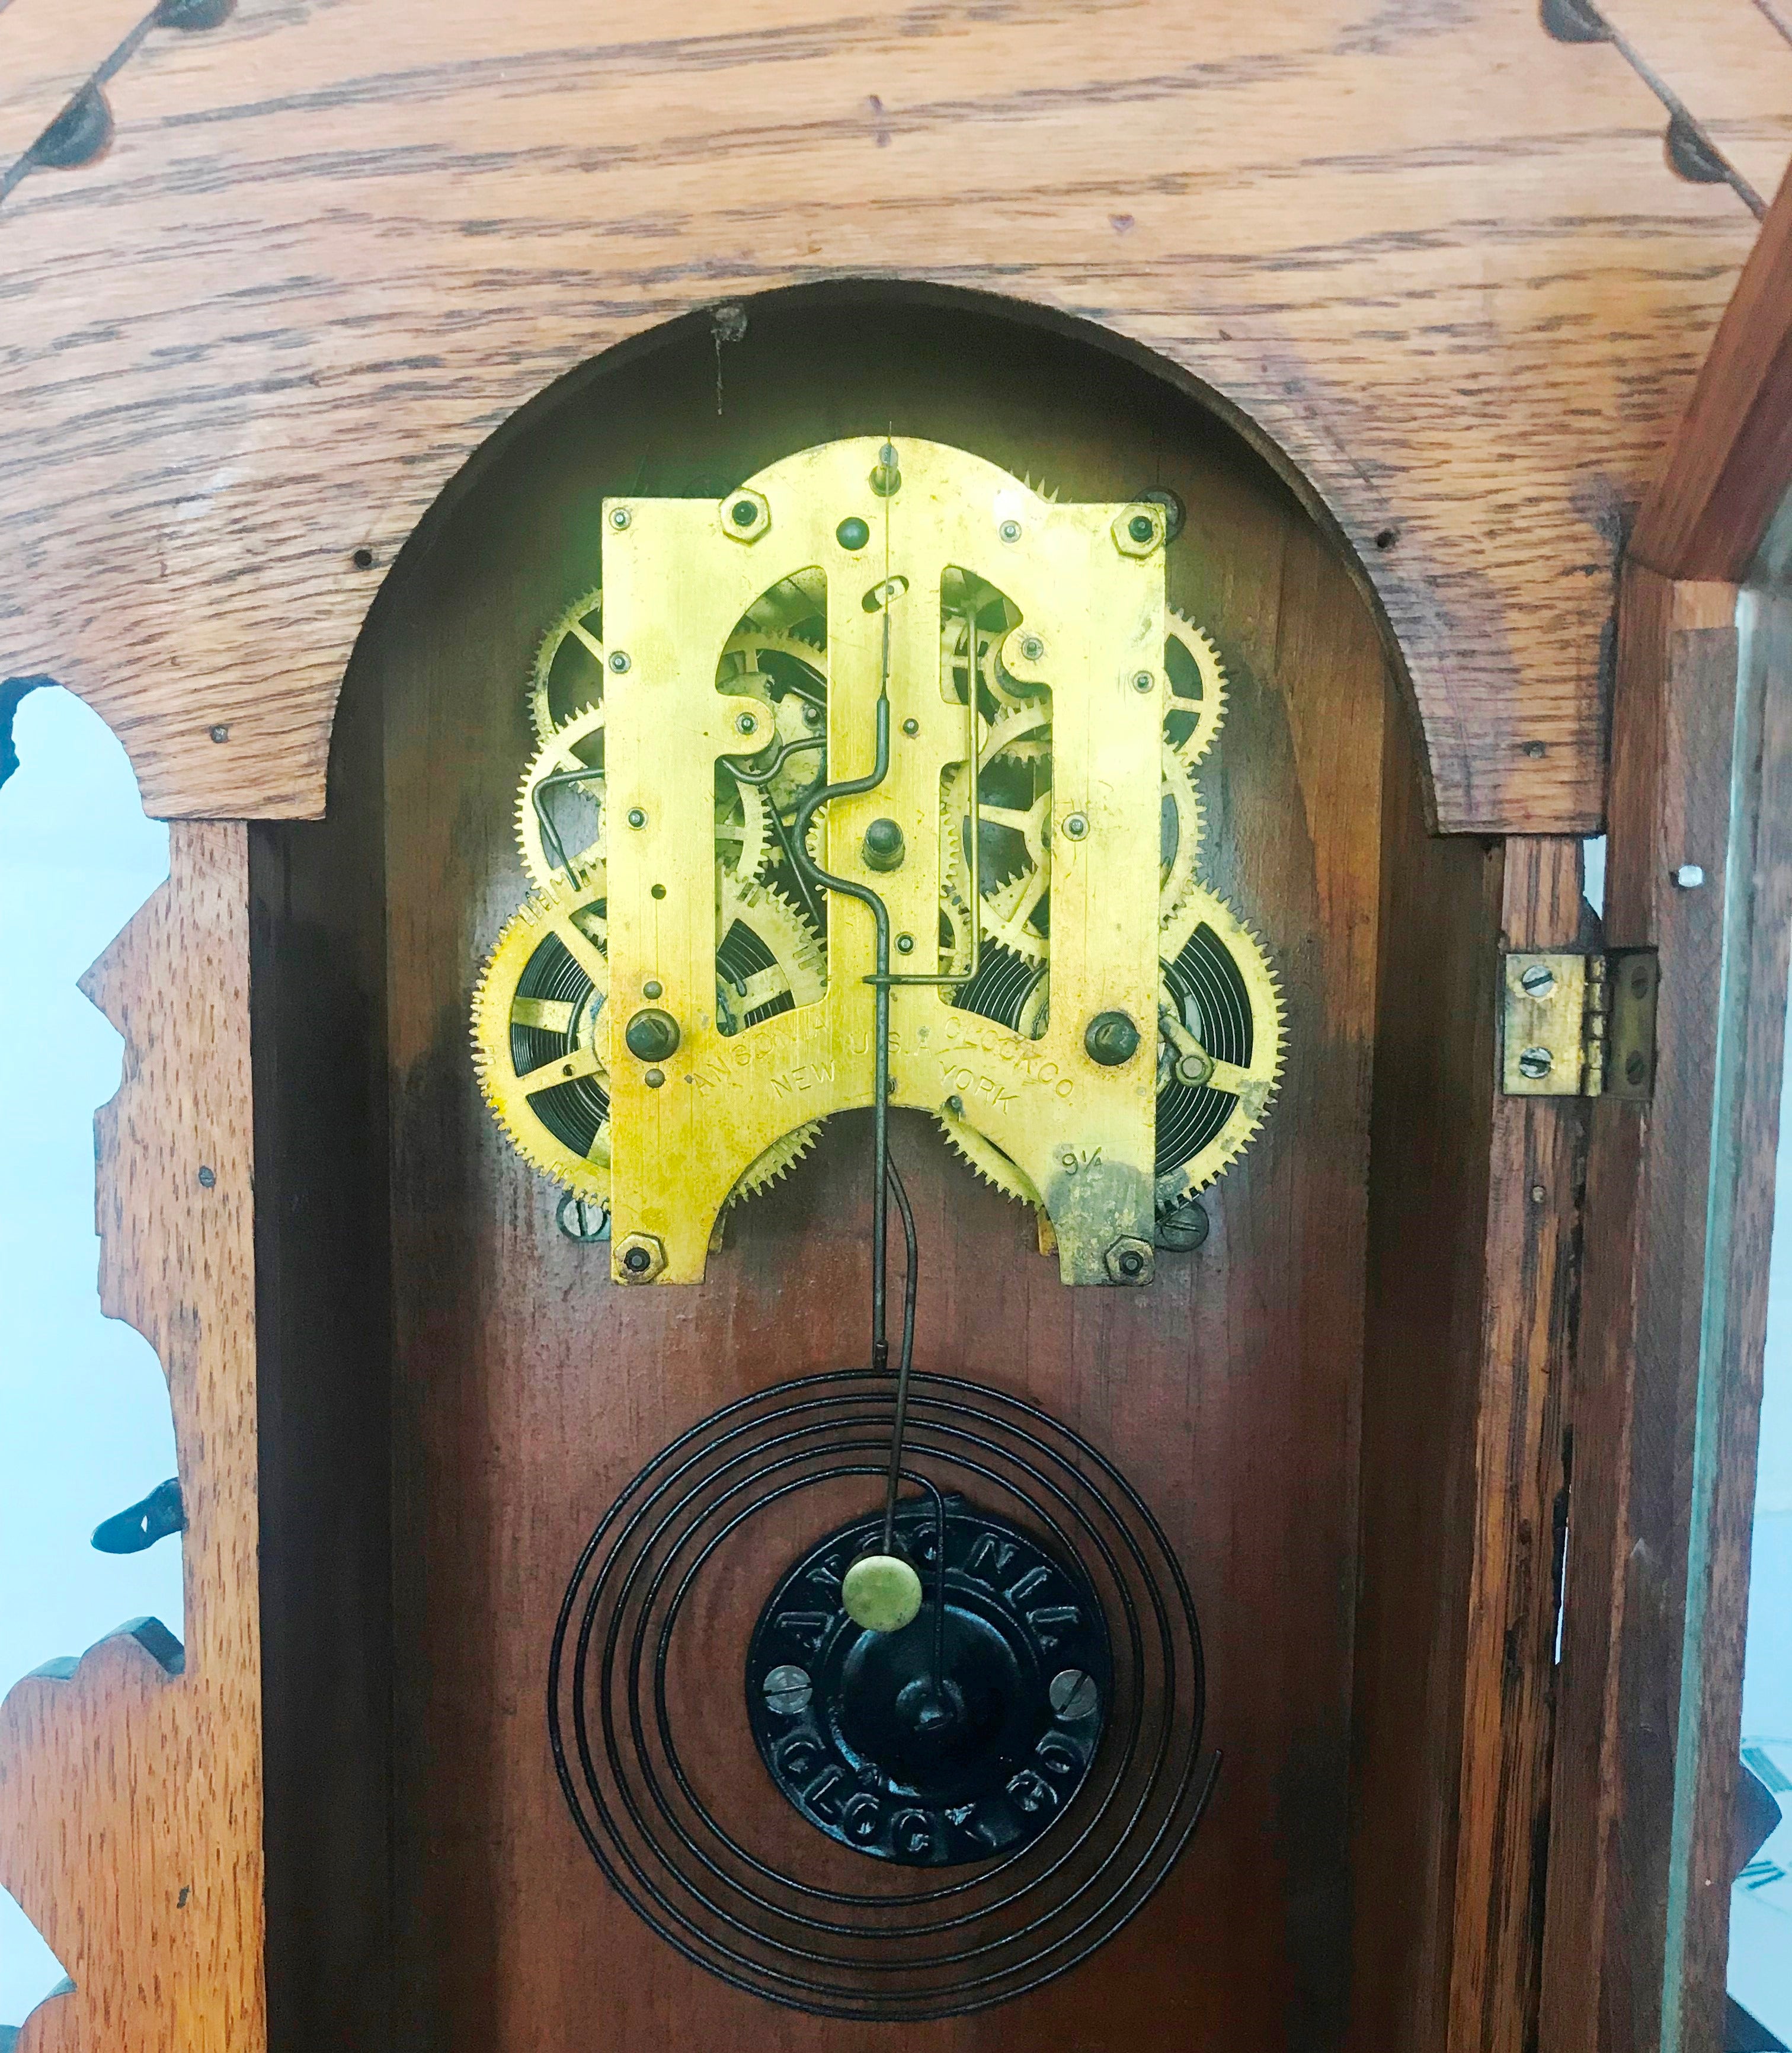 Antique Cottage Chime Mantel Clock | eXibit collection